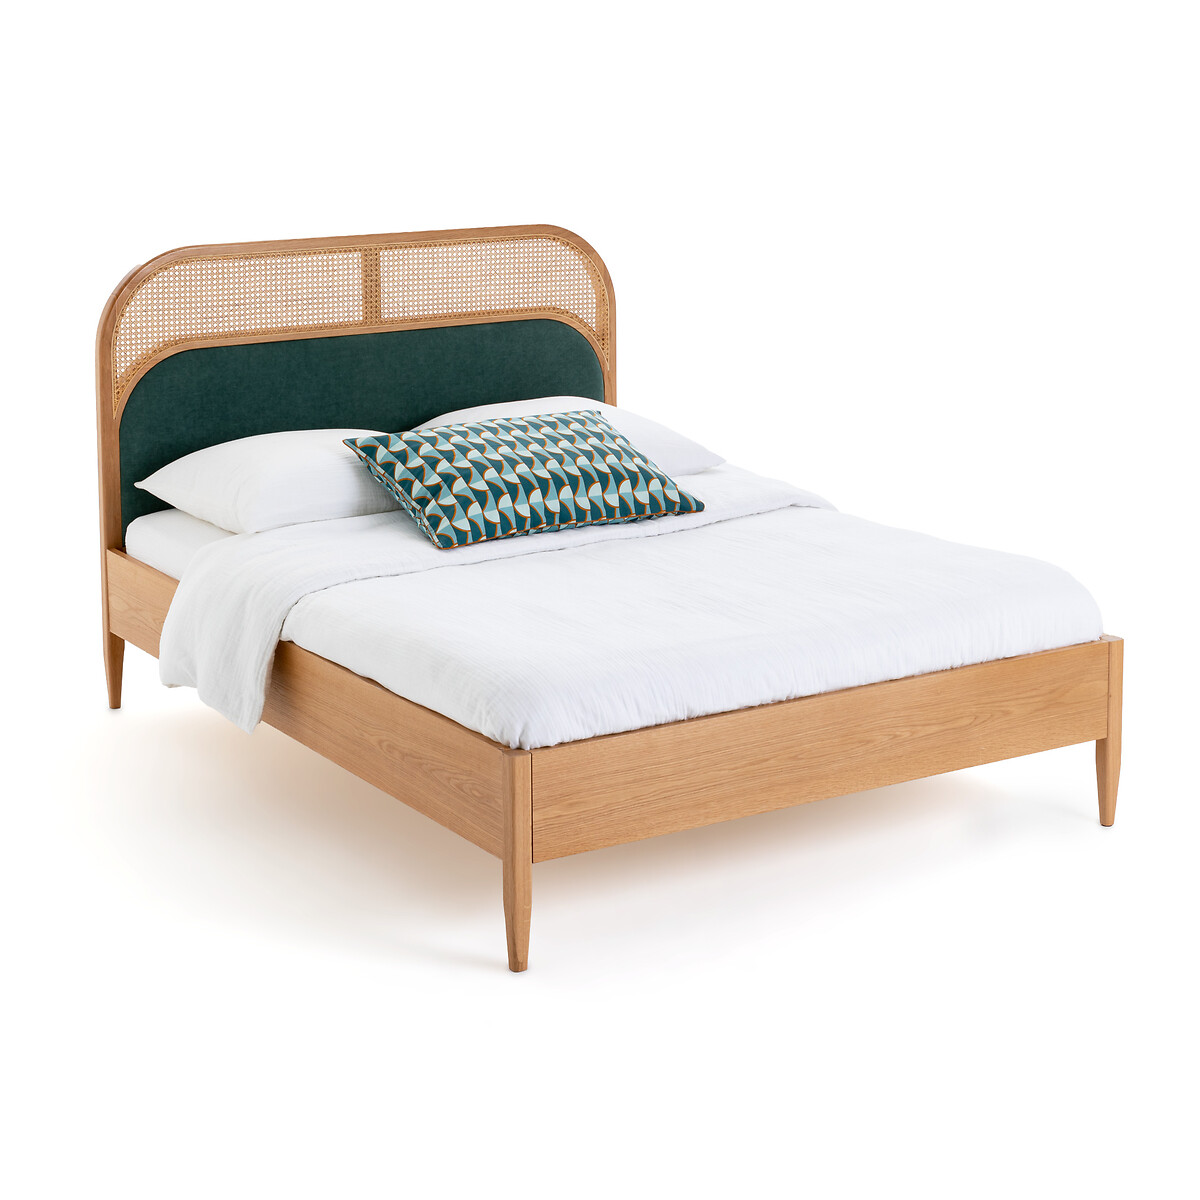 Кровать Из плетеного материала и велюра с кроватным основанием Buisseau 160 x 200 см каштановый